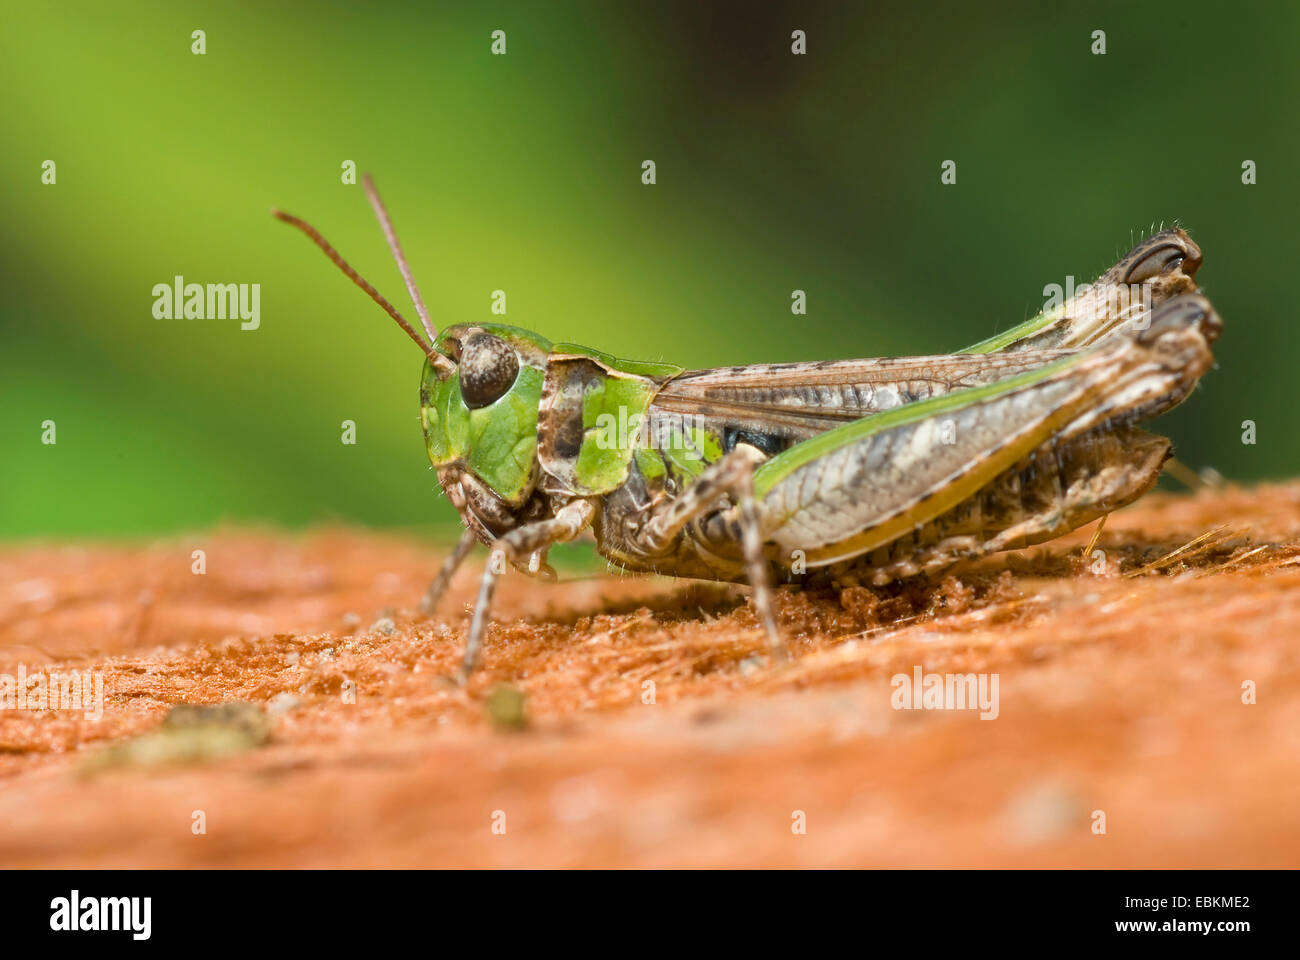 mottled grasshopper (Myrmeleotettix maculatus, Gomphocerus maculatus), sitting on the ground, Germany Stock Photo